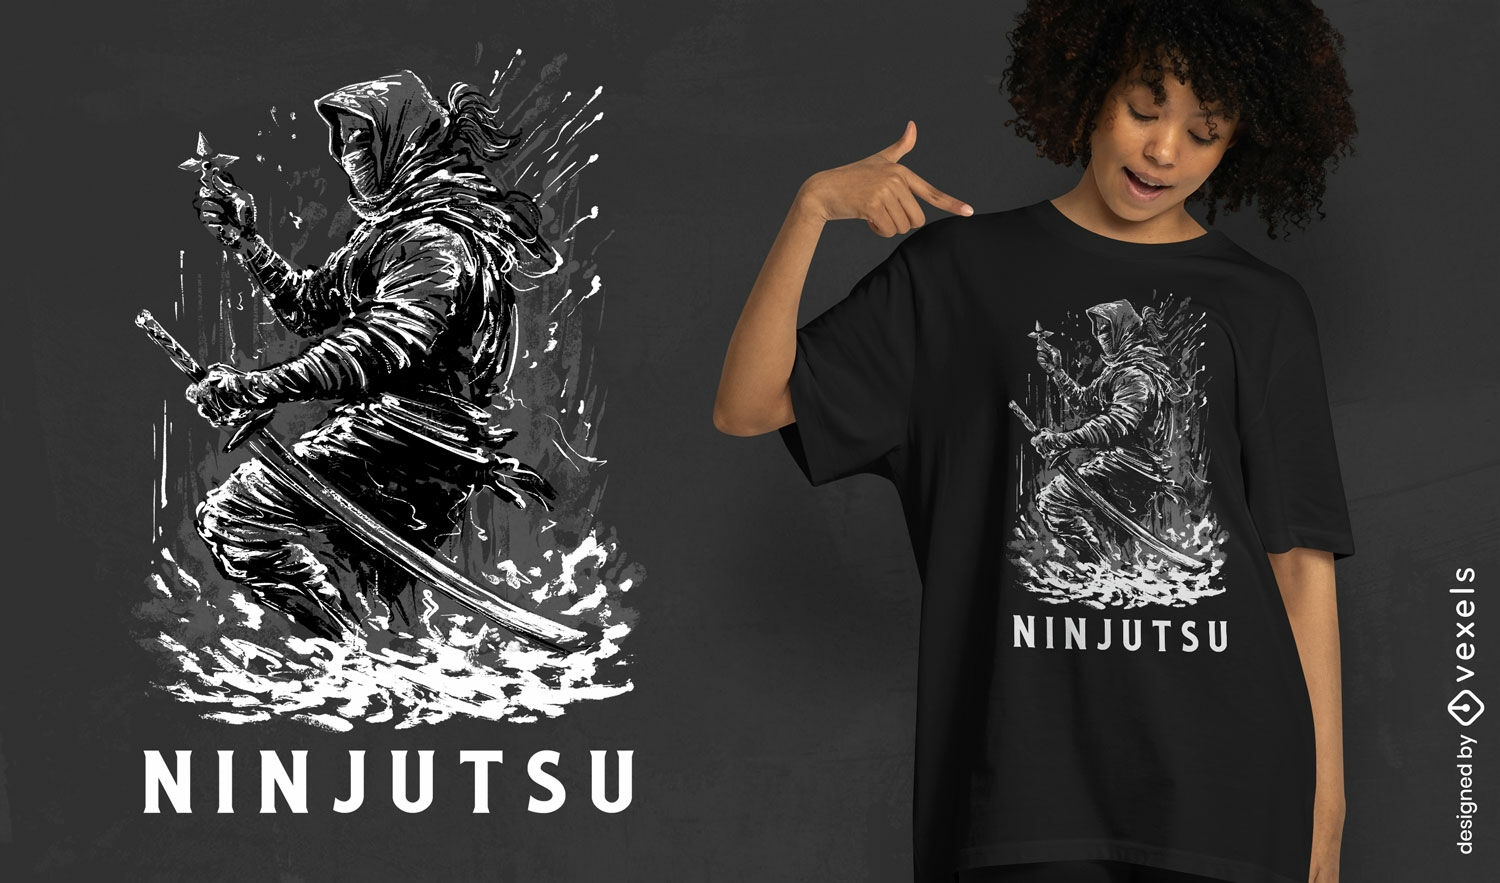 Ninjutsu t-shirt design